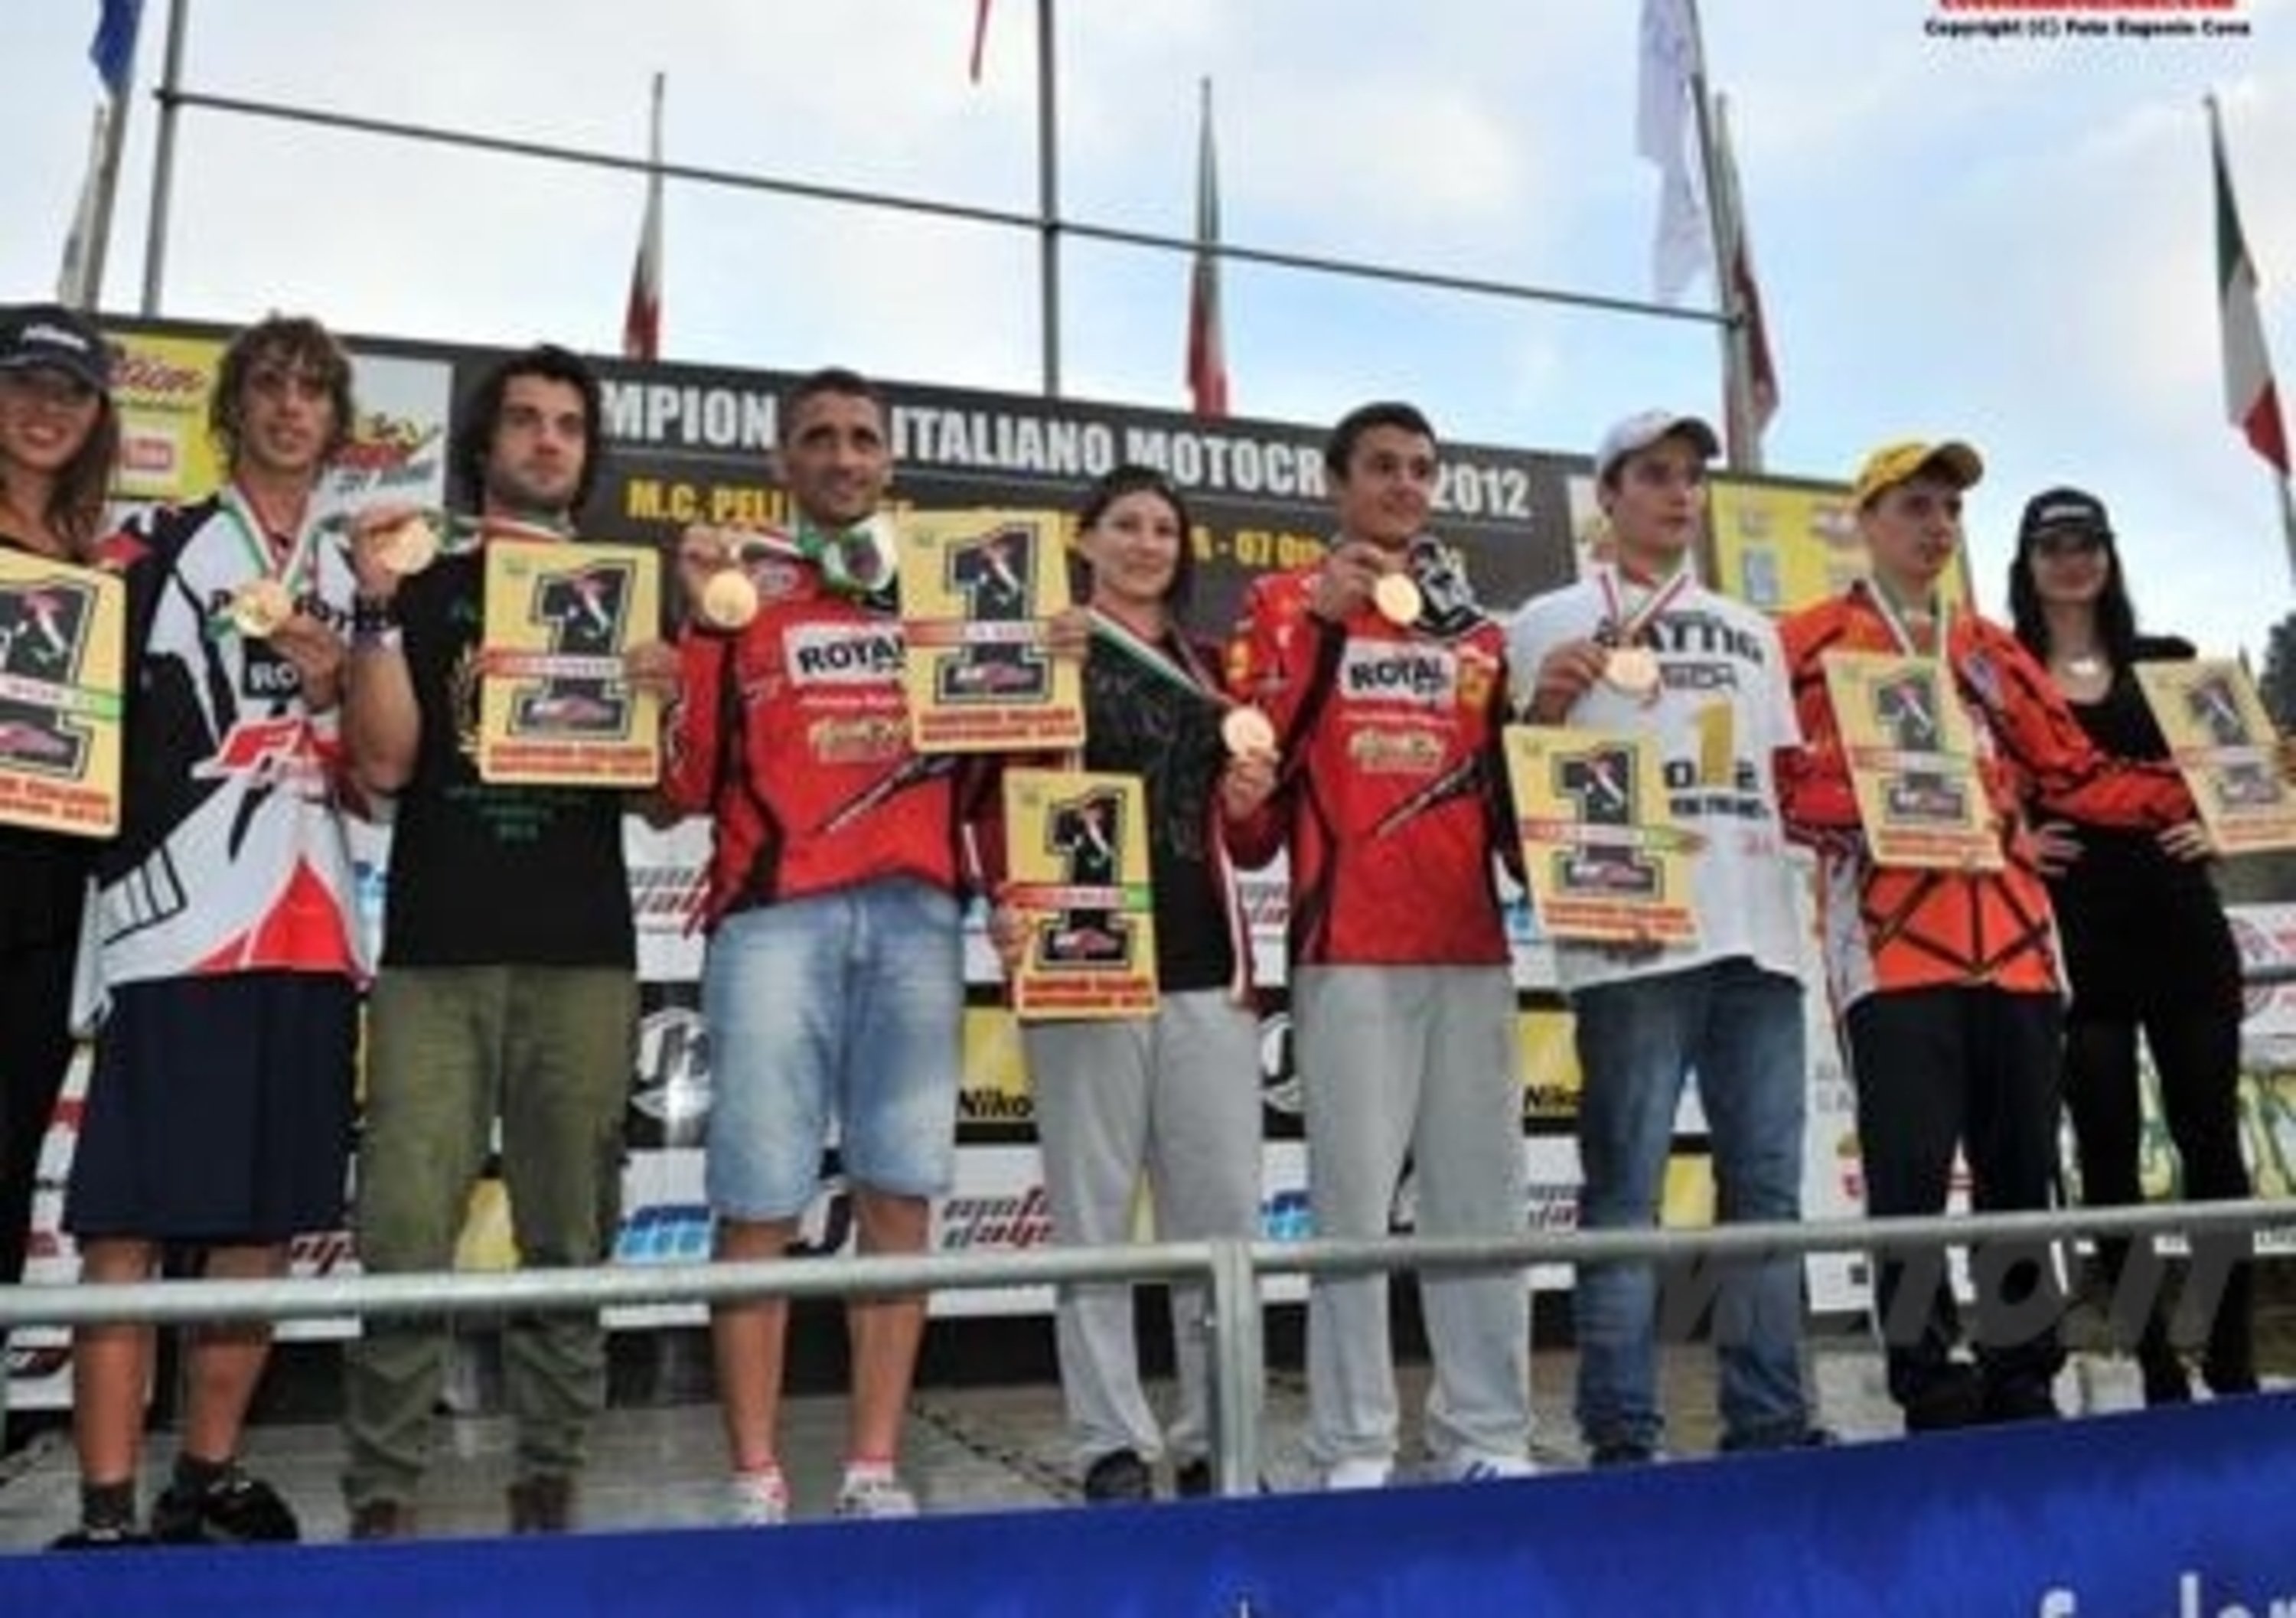 Campionato Italiano Motocross, ecco i campioni 2012